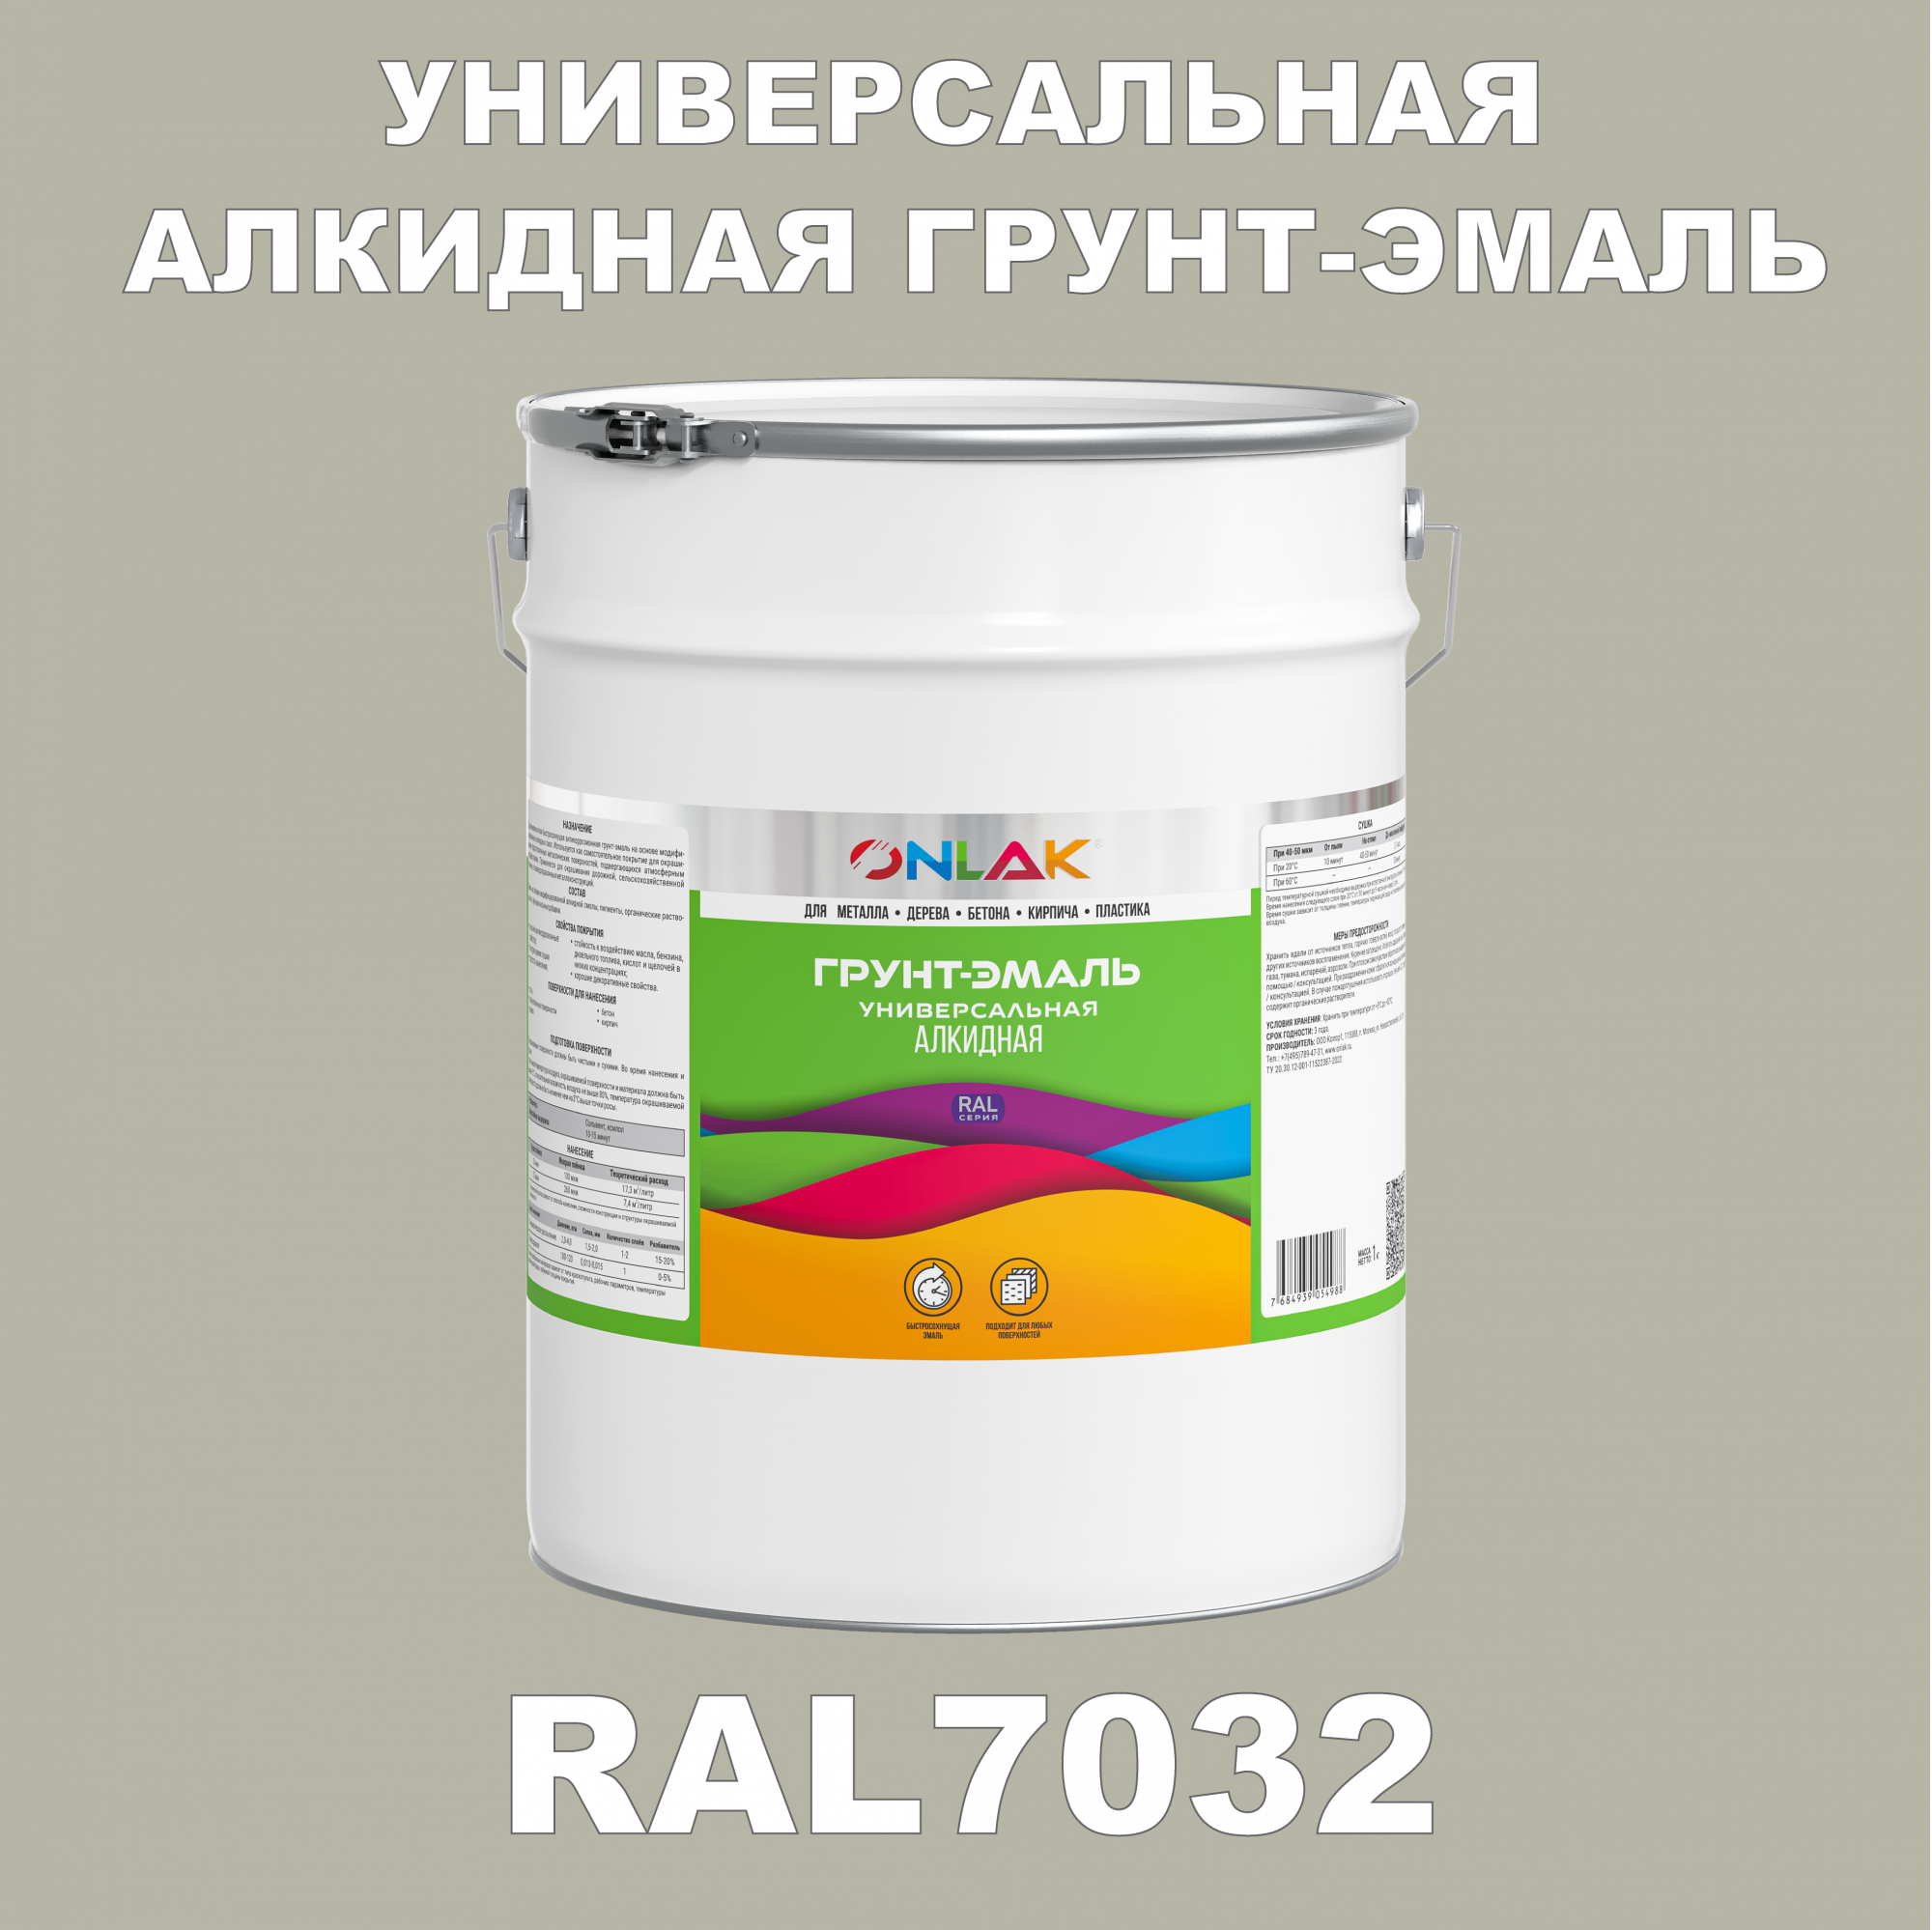 Грунт-эмаль ONLAK 1К RAL7032 антикоррозионная алкидная по металлу по ржавчине 20 кг грунт эмаль престиж по ржавчине алкидная зеленая 1 9 кг